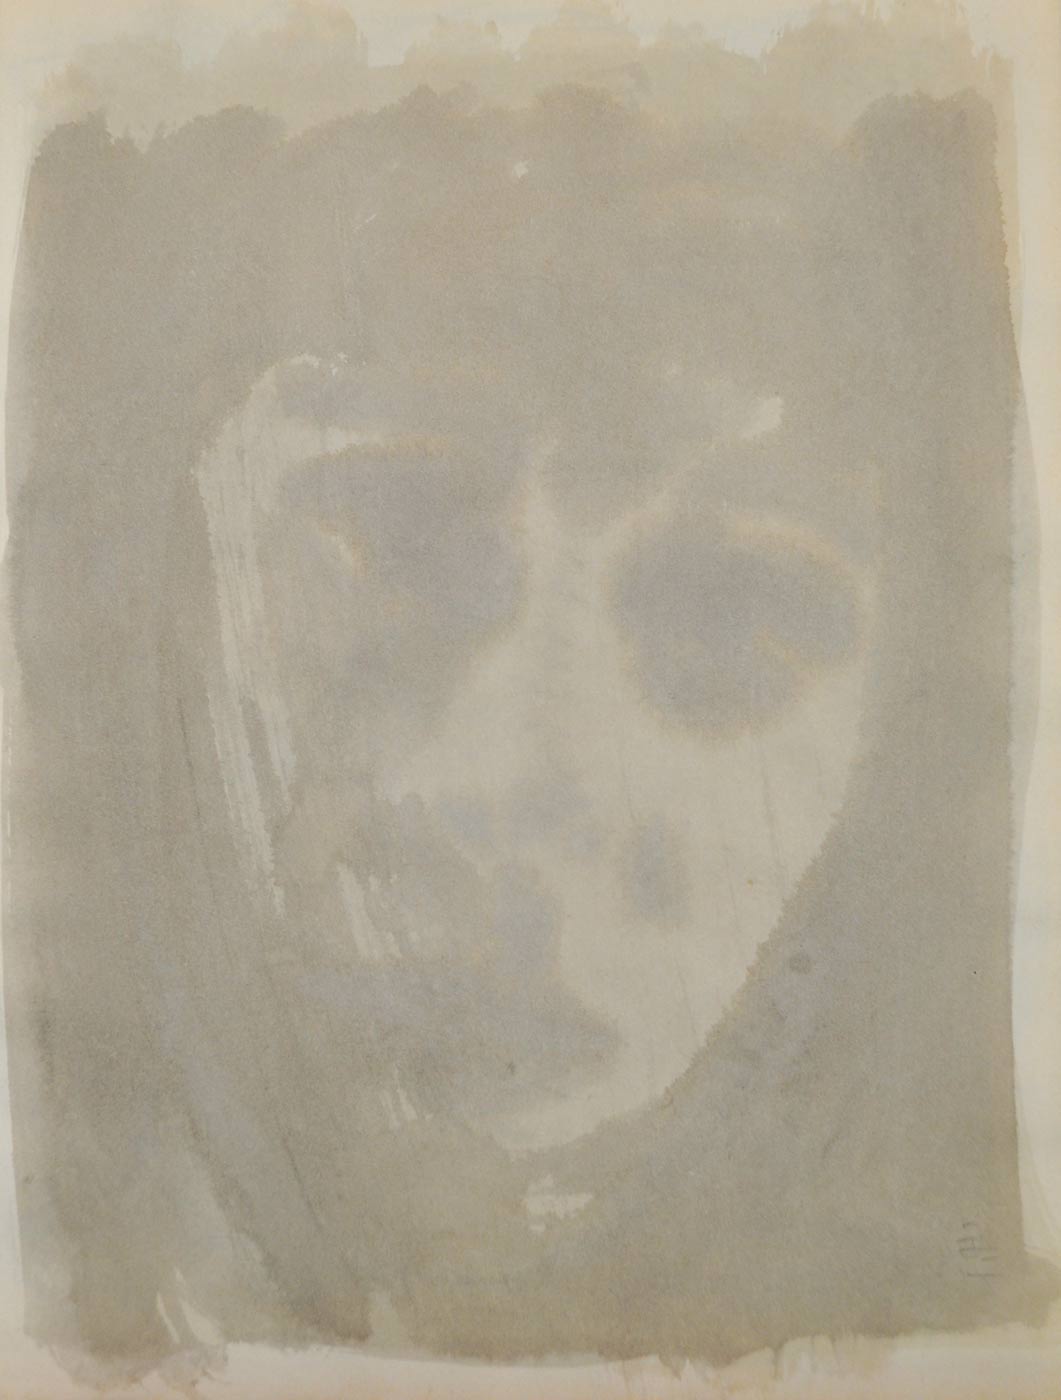 Le visage de face, un peu penché, uniquement exprimé par le blanc du papier évité par de grandes tâches fondues de gris léger.